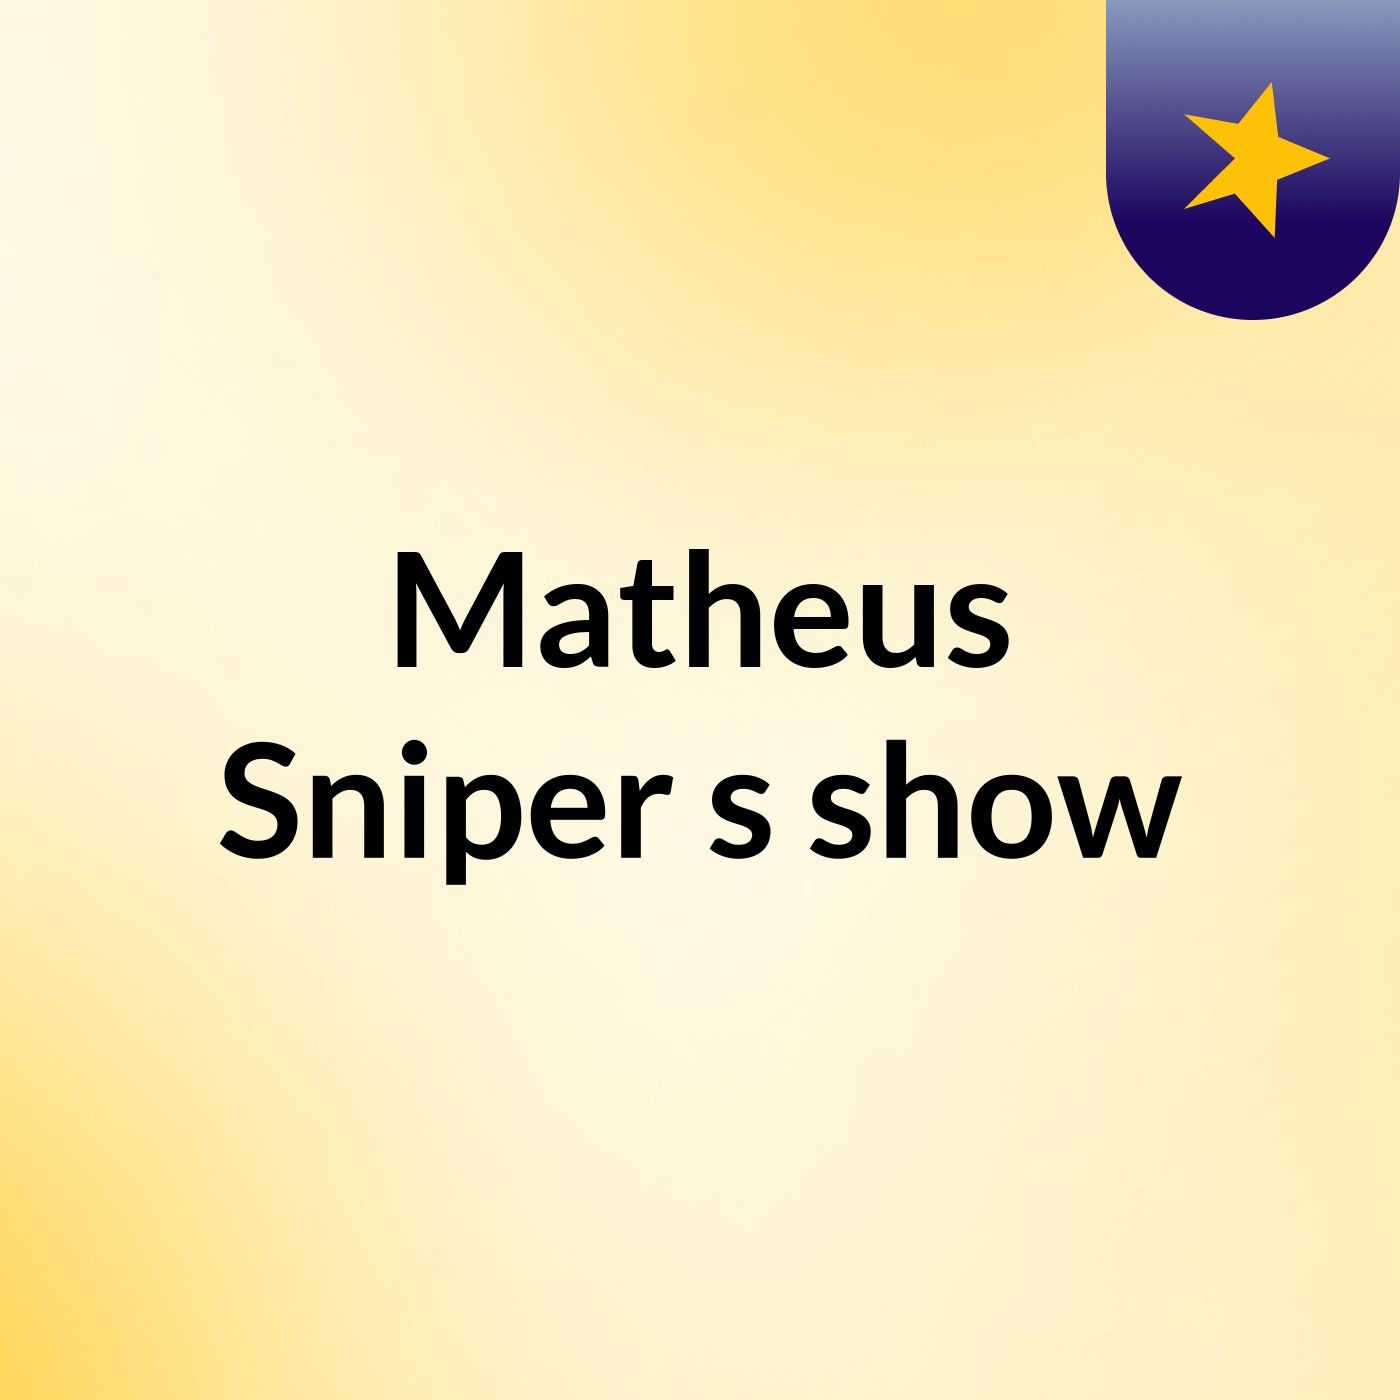 Matheus Sniper's show